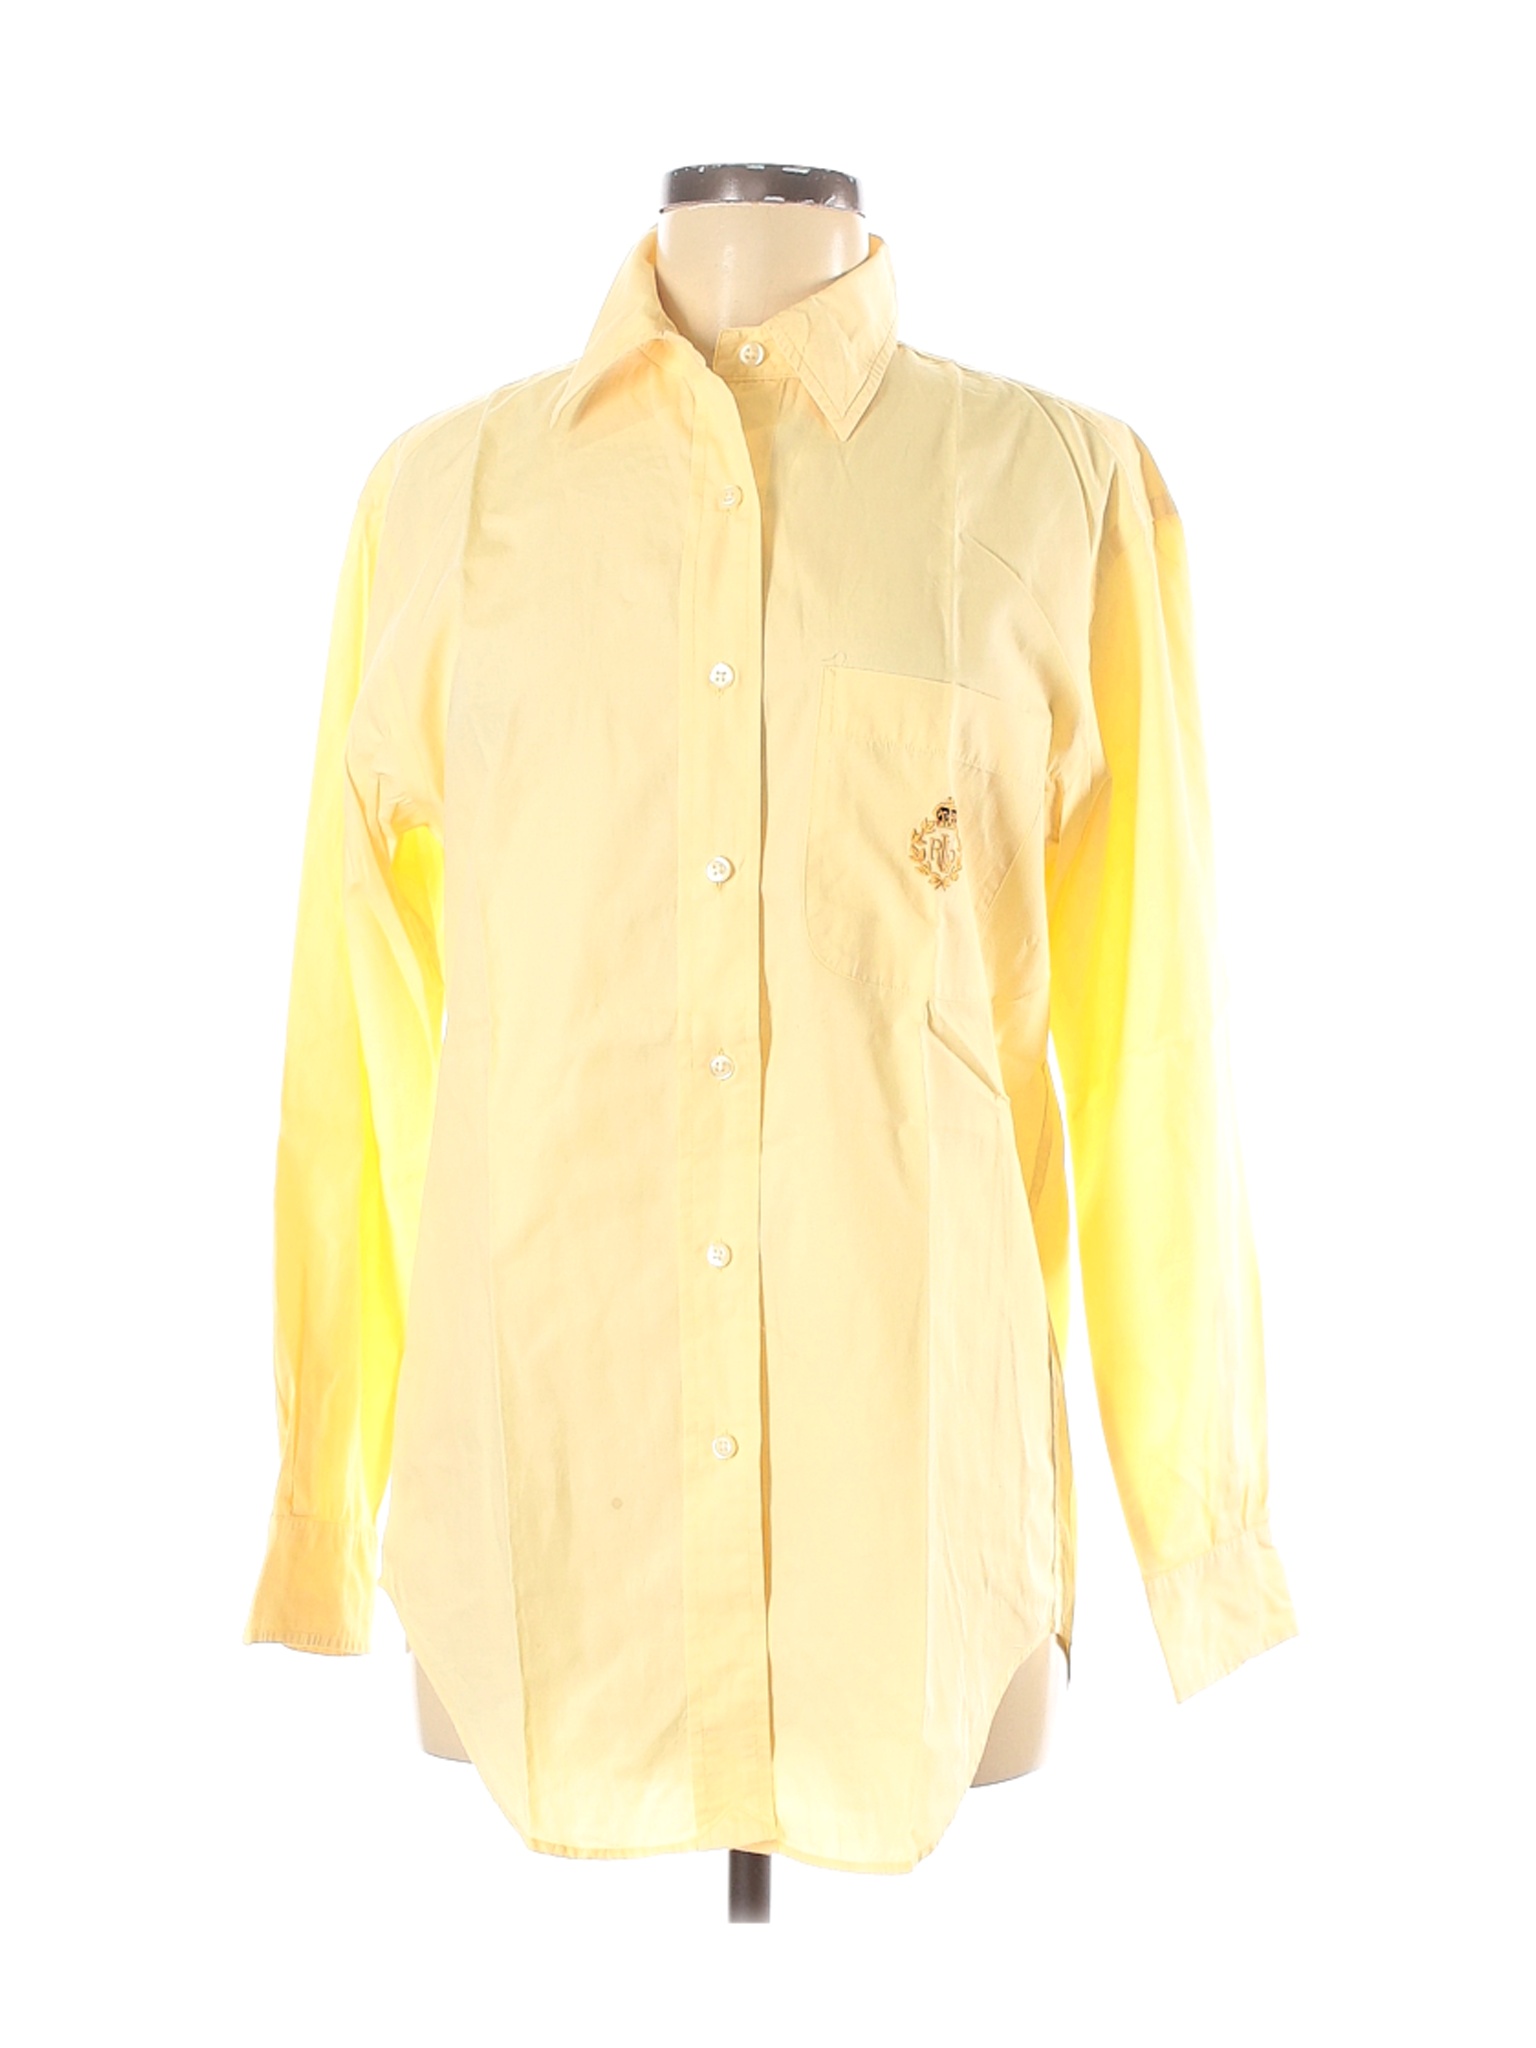 Lauren by Ralph Lauren Women Yellow Long Sleeve Button-Down Shirt 6 | eBay